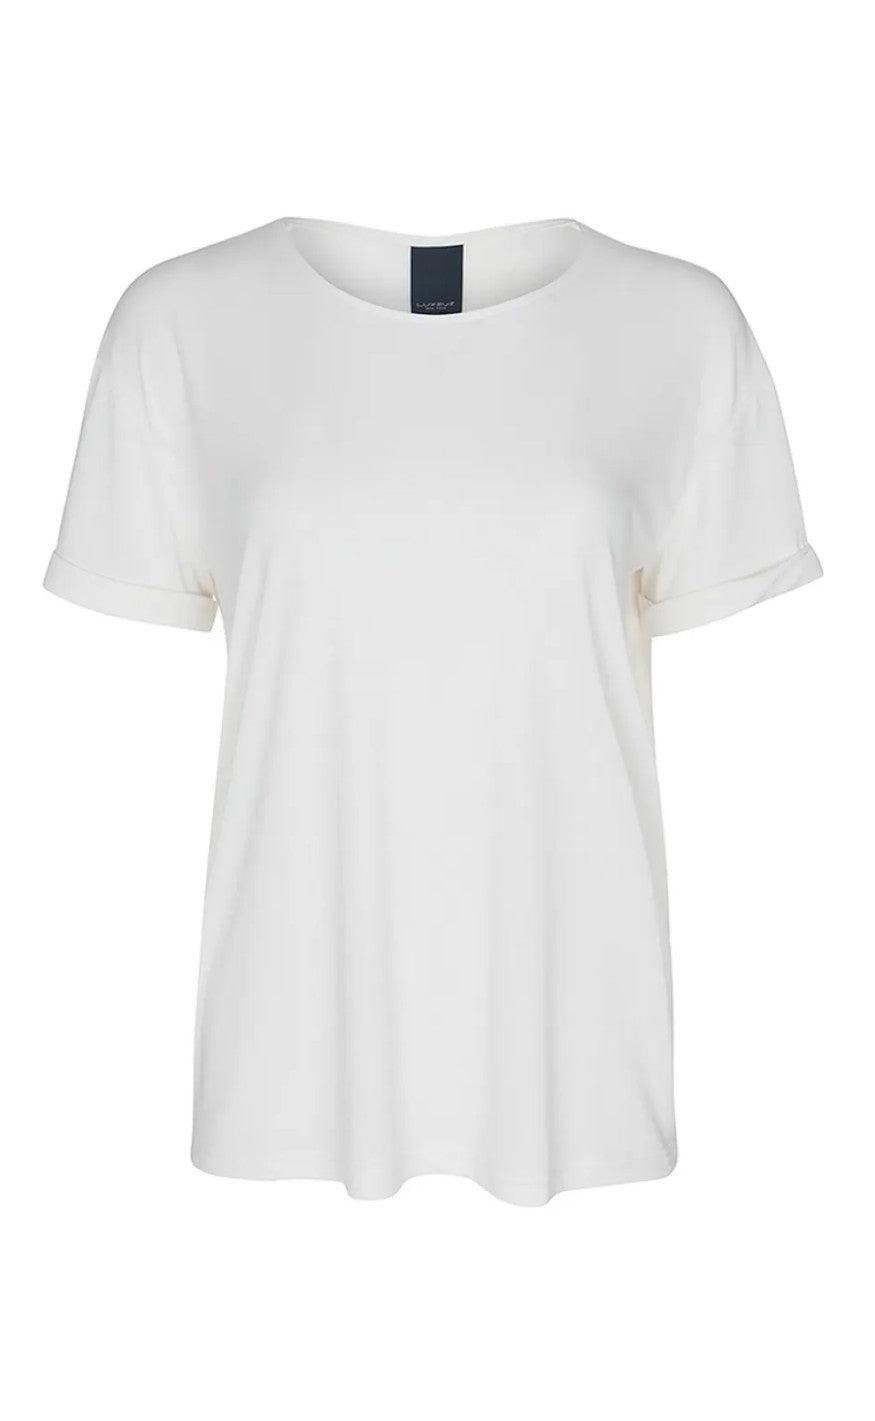 4: One Two Luxzuz -  Karin T-shirt - Cream